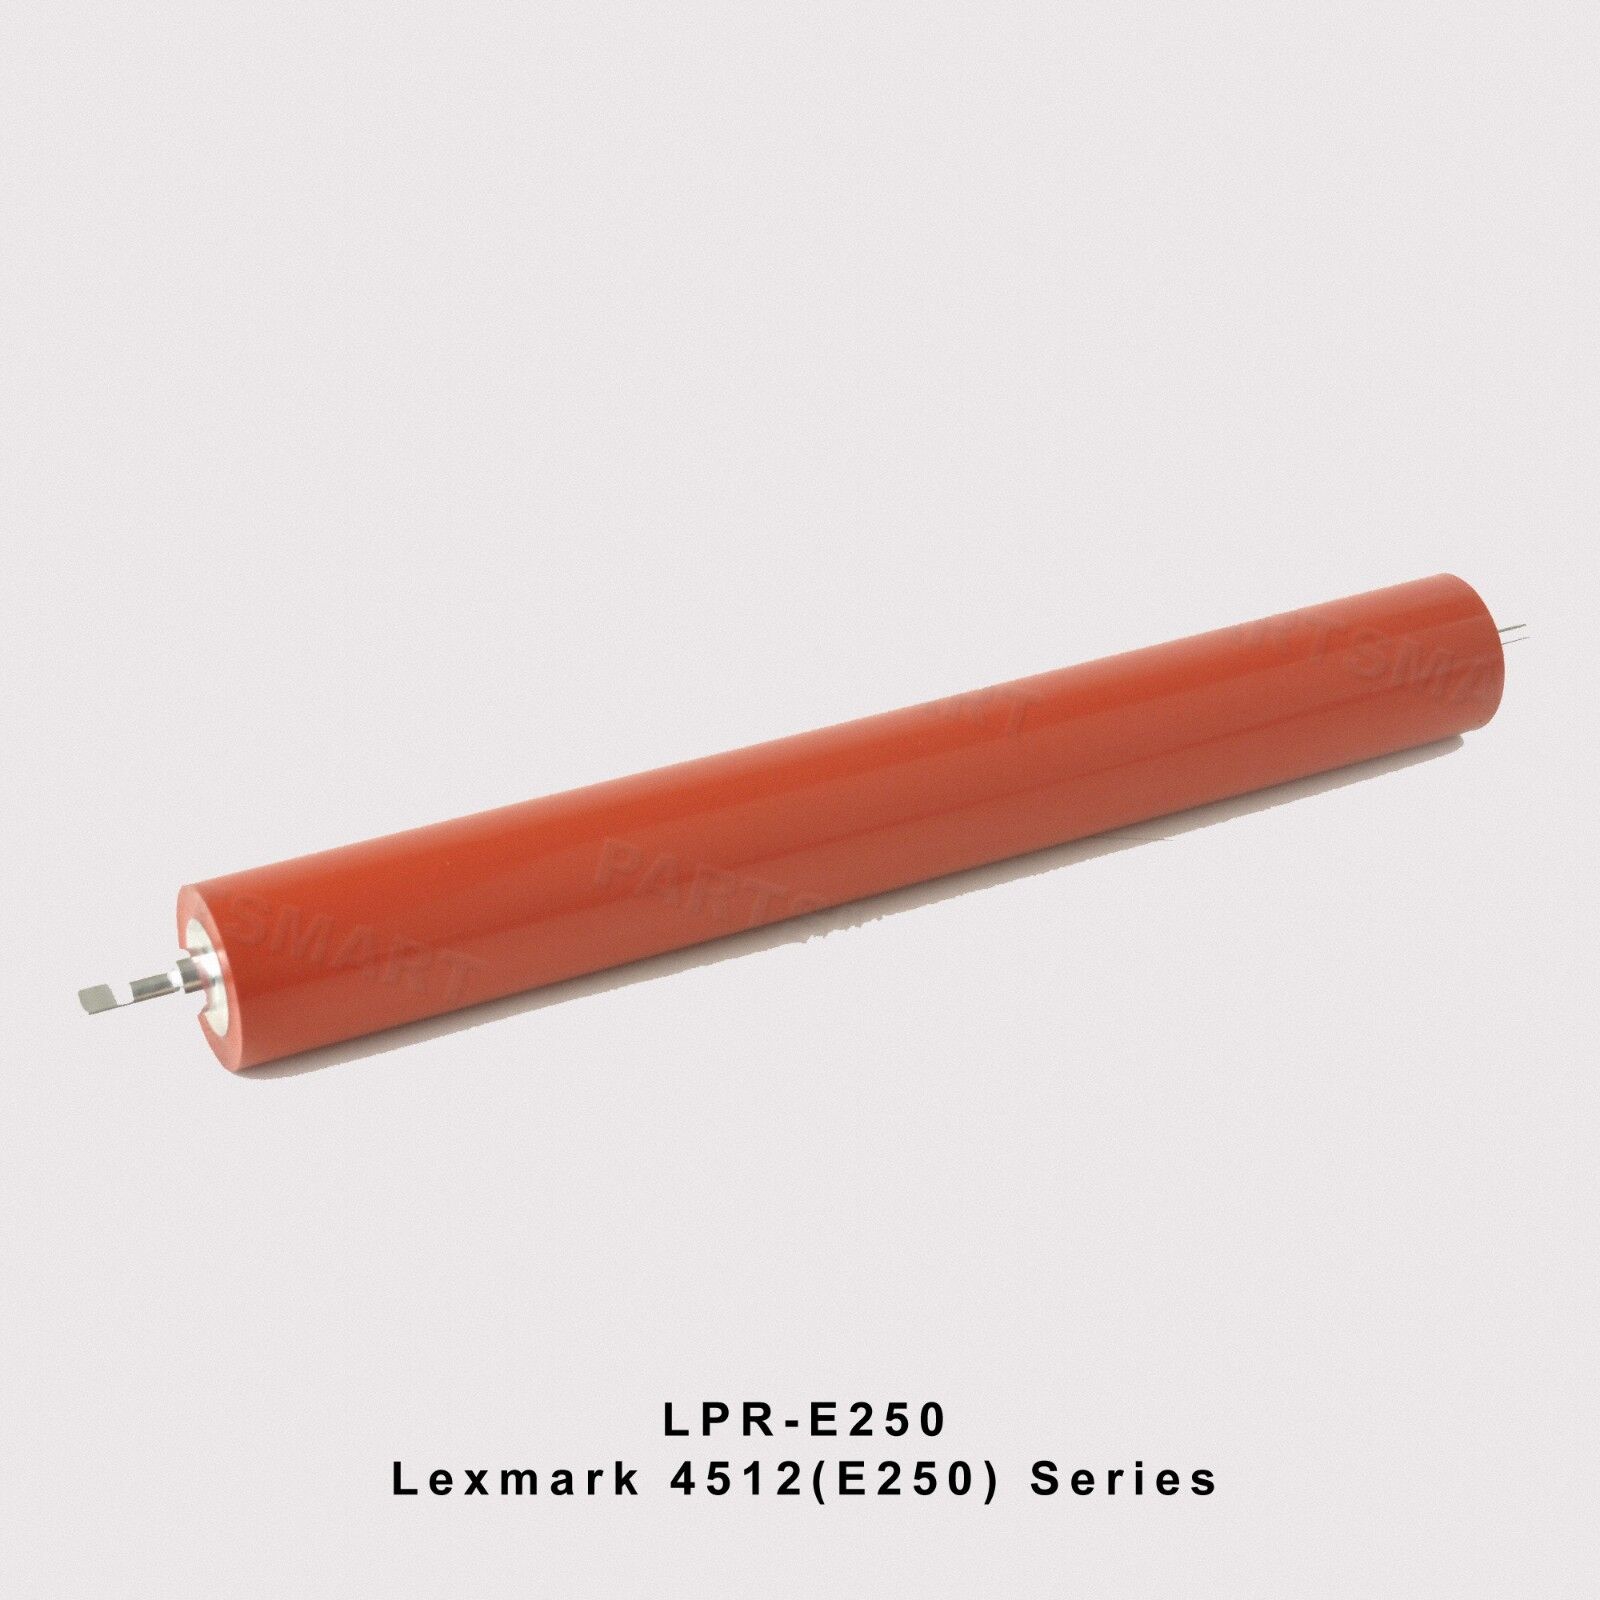 Lexmark 4512 E250 Lower Fuser Pressure Roller LPR-E250 OEM Quality